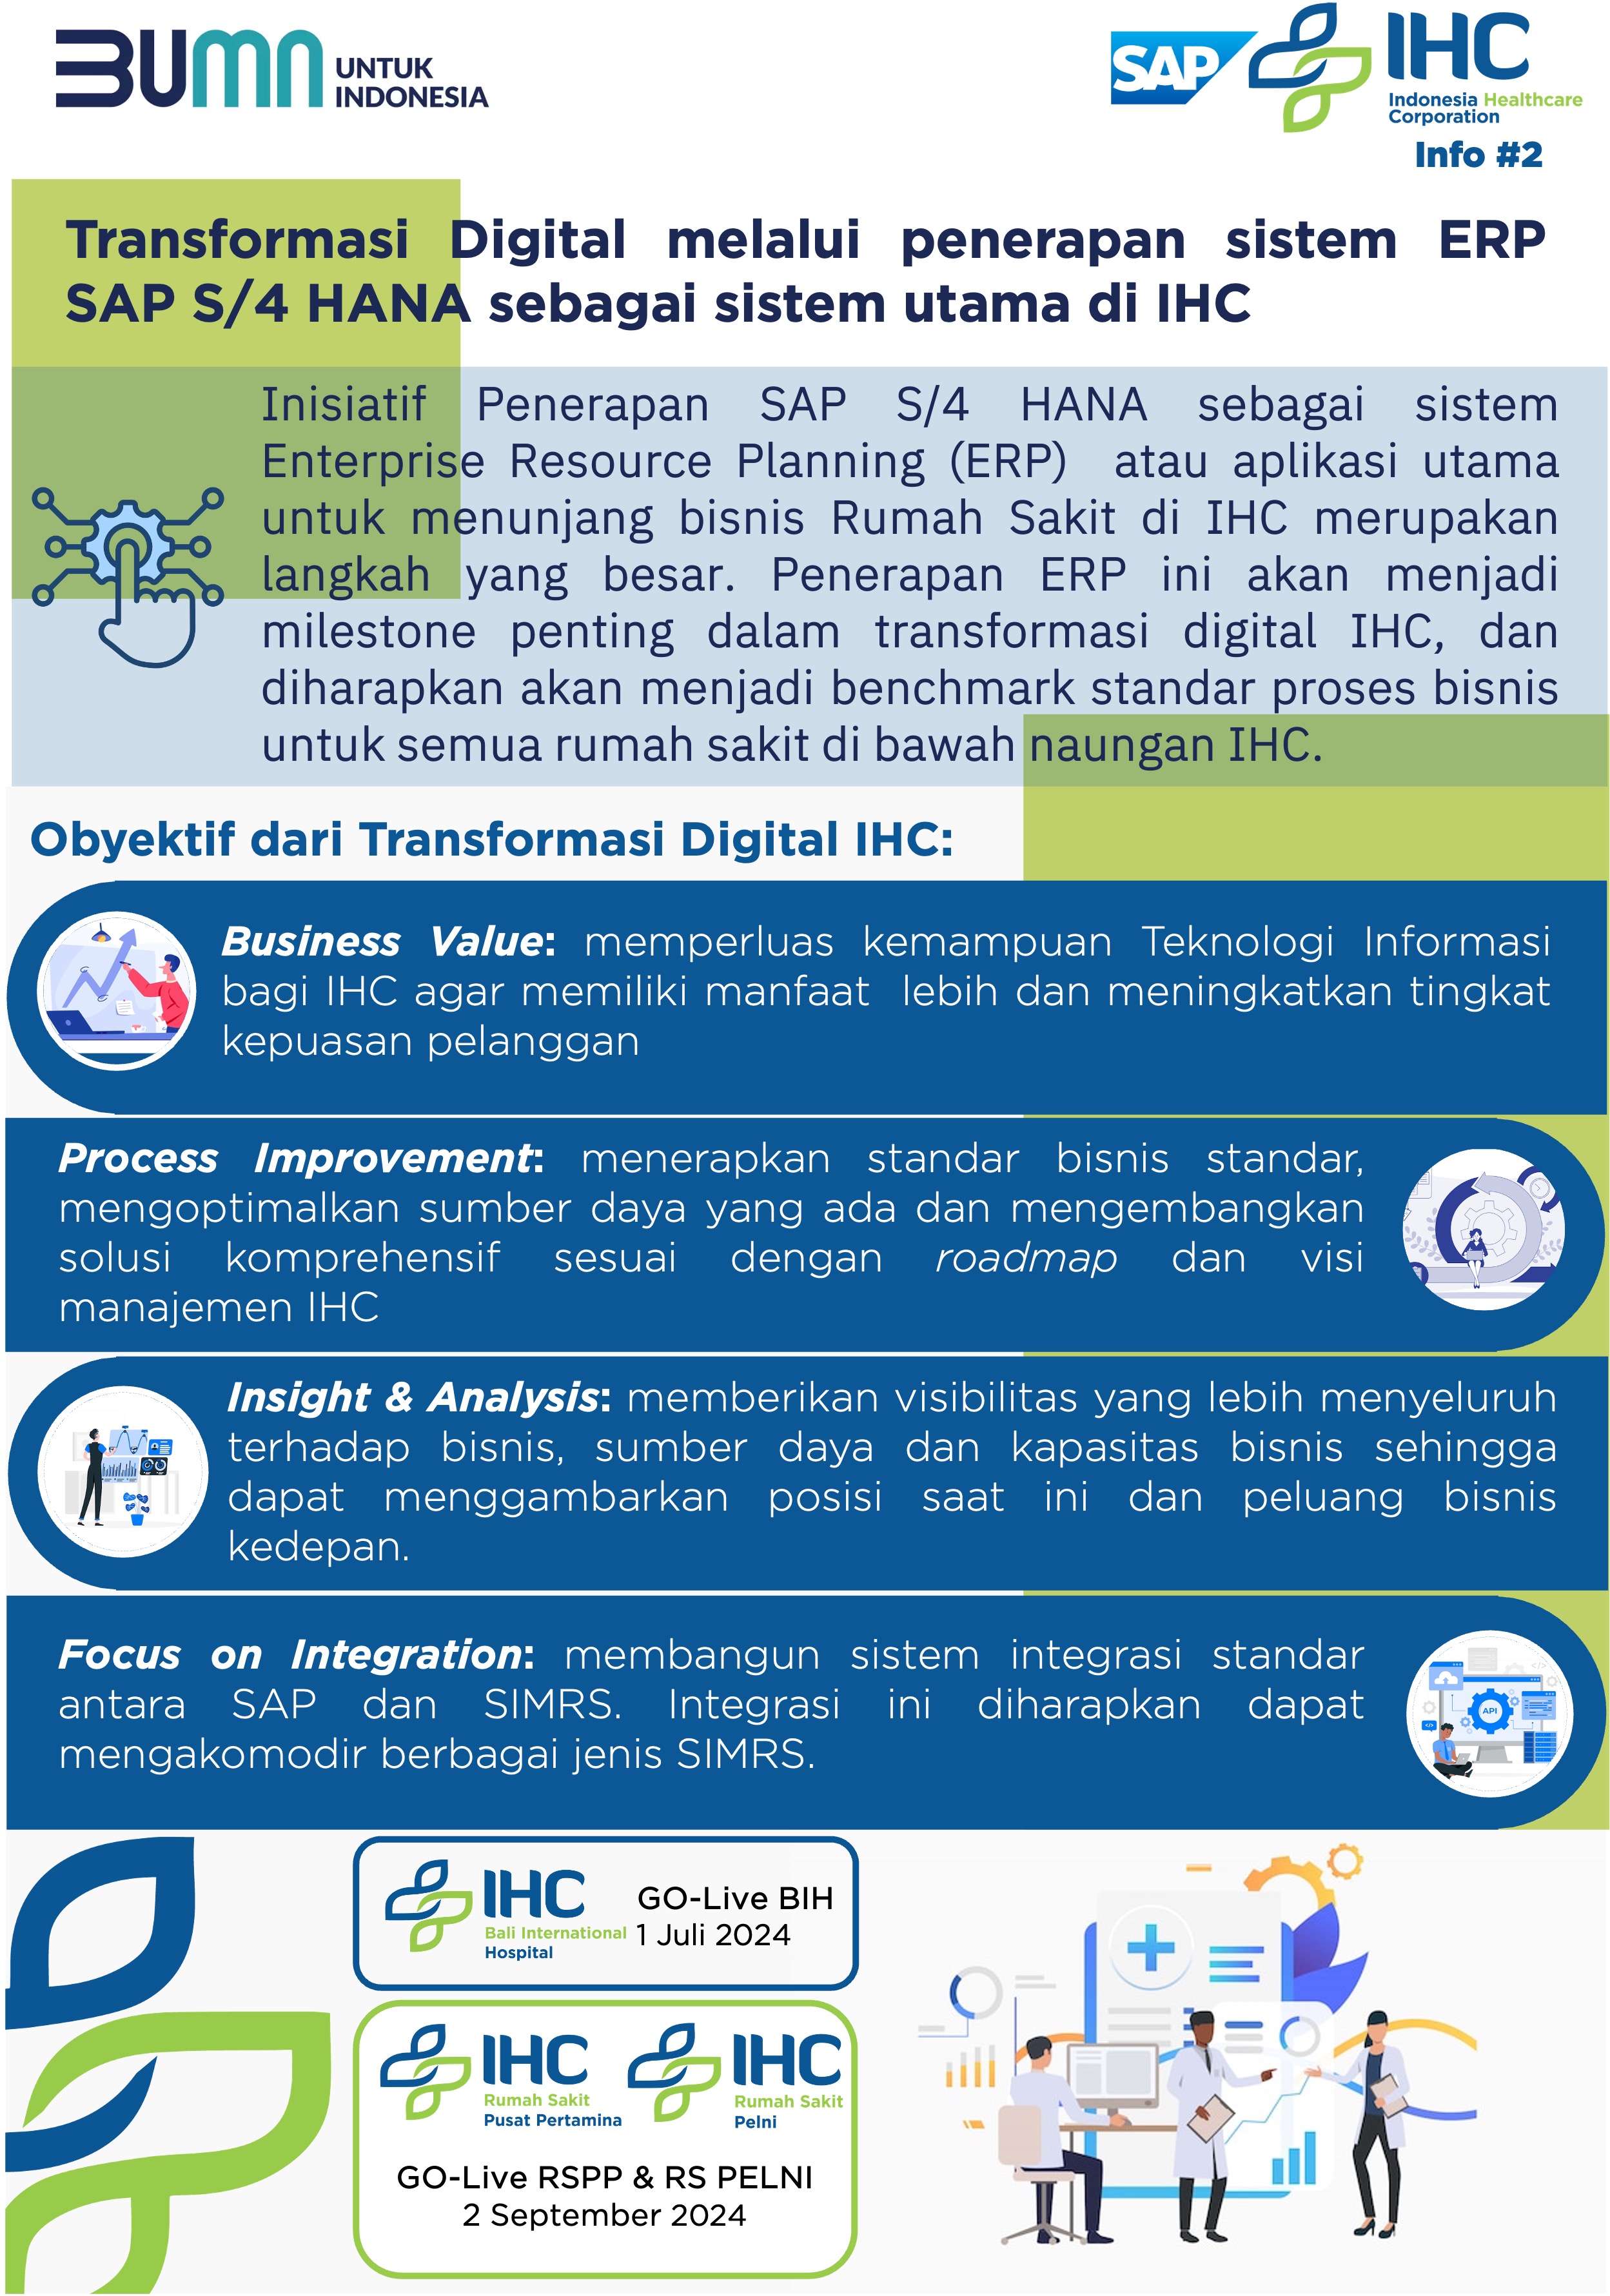 Transformasi Digital melalui Penerapan Sistem ERP SAP S/4 HANA sebagai Sistem Utama di IHC